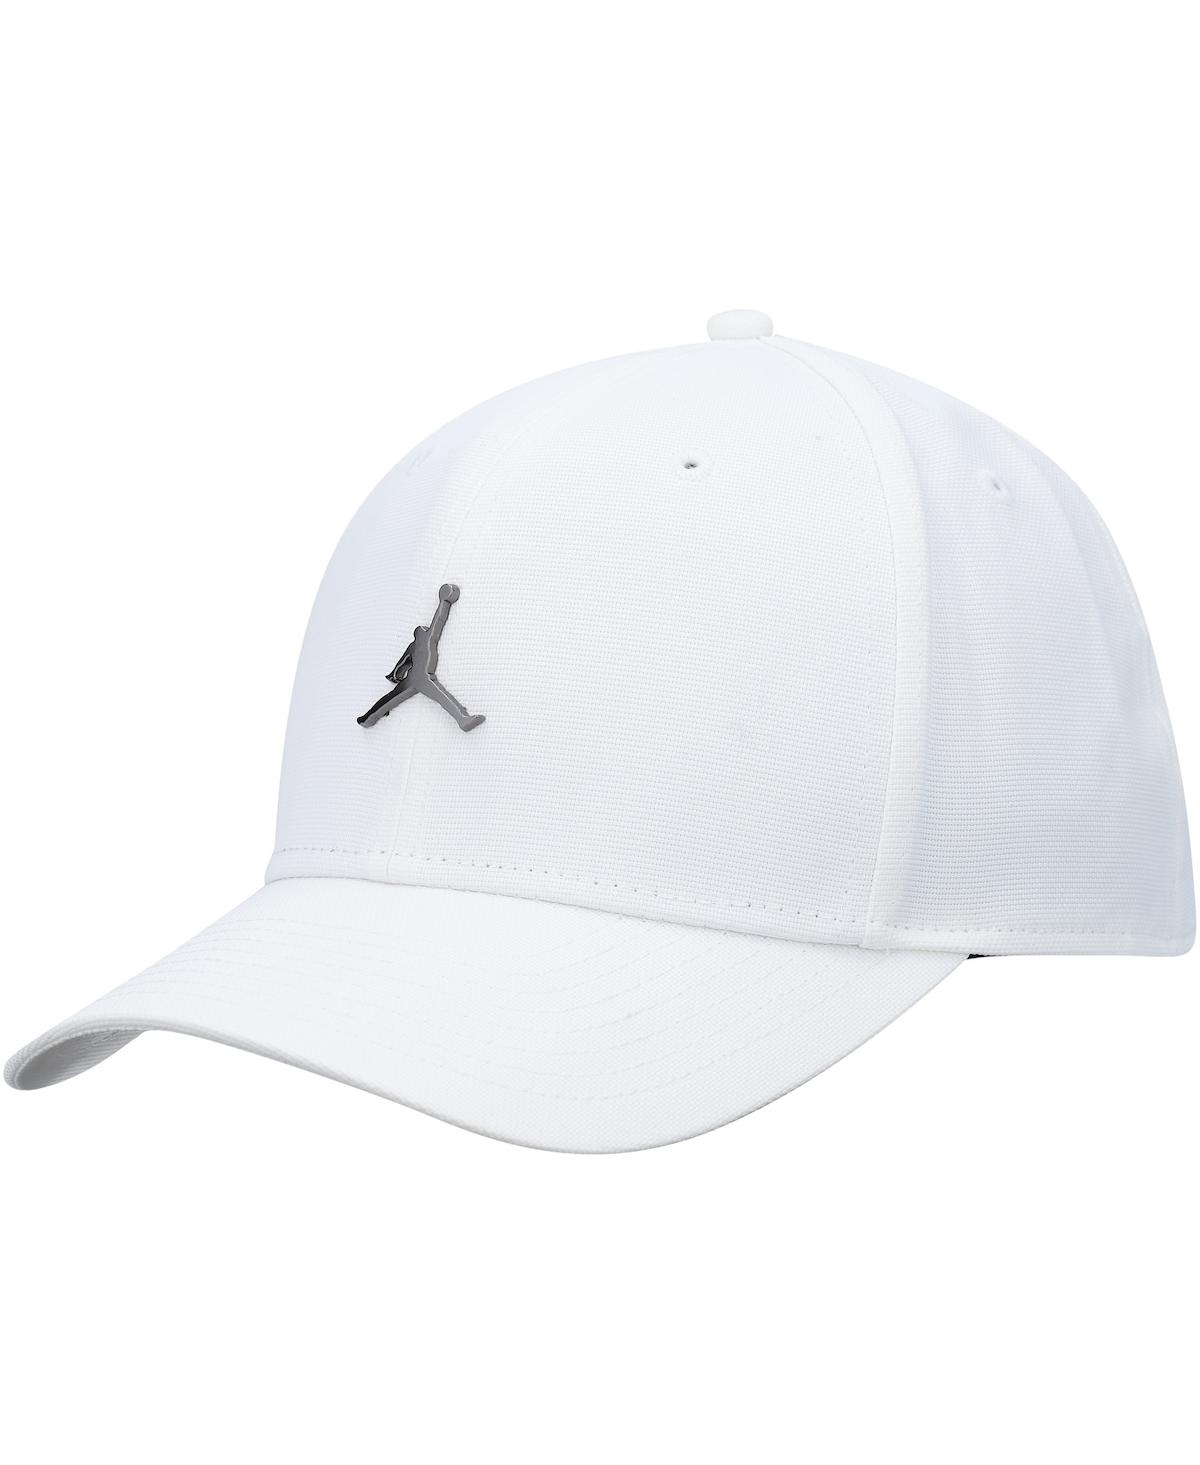 Men's Jordan White Metal Logo Adjustable Hat - White